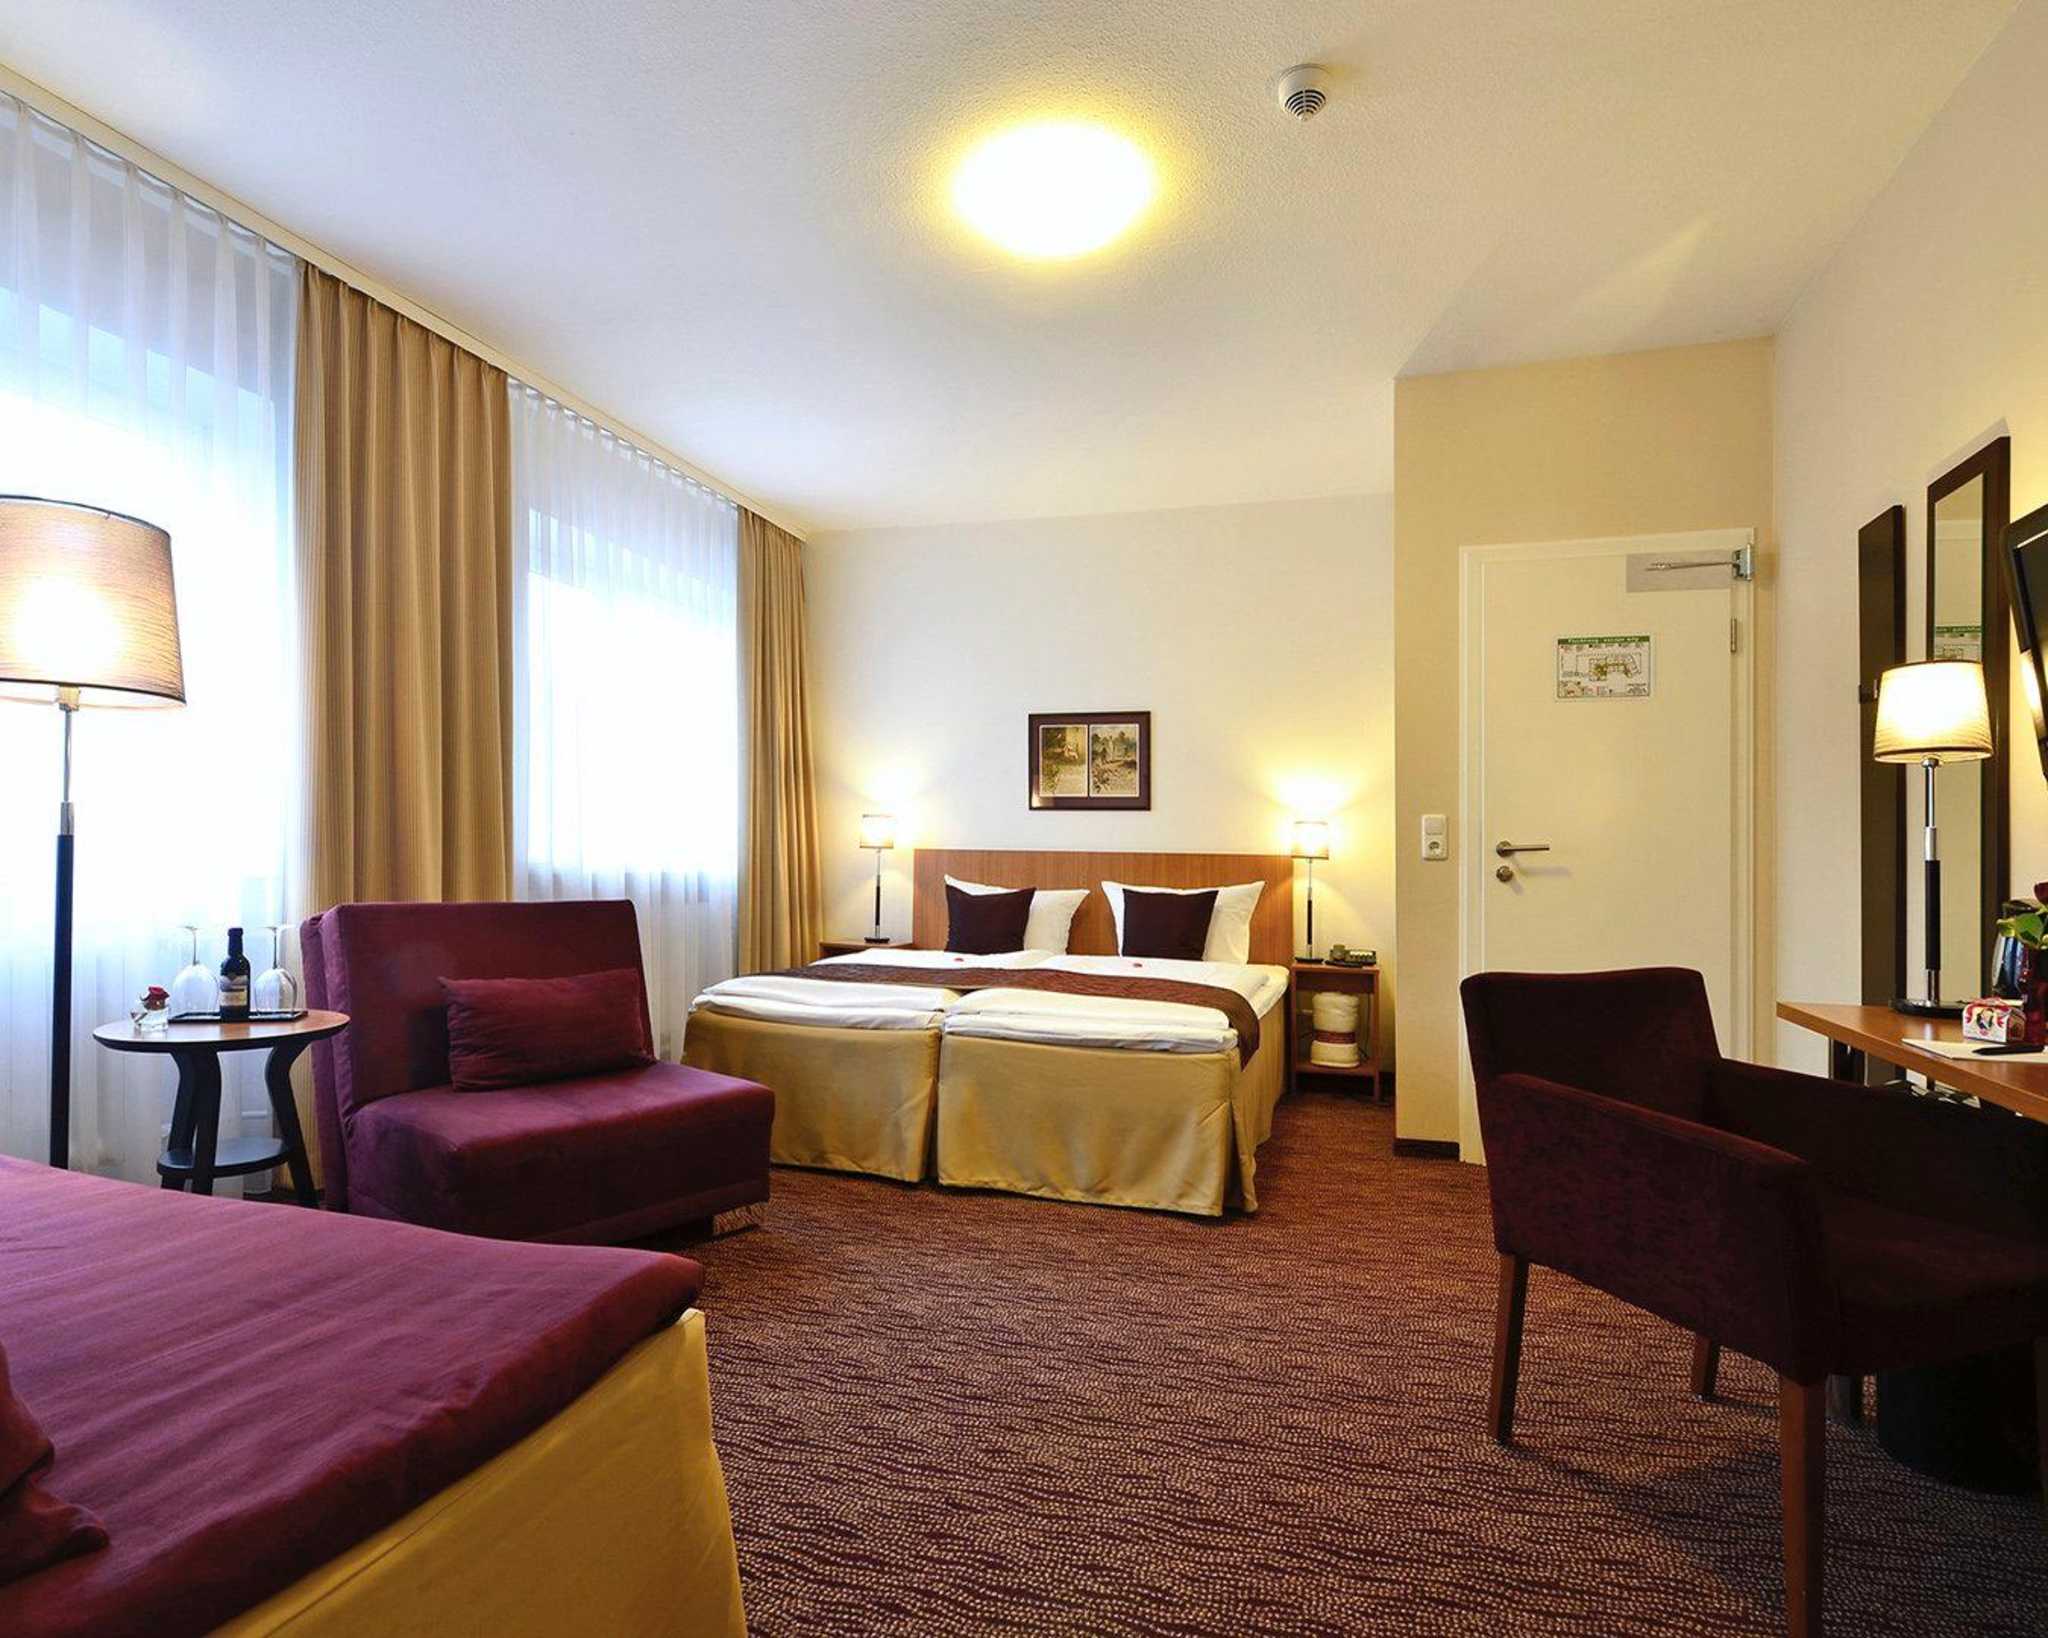 Comfort Hotel tom Kyle, Langer Segen 5a in Kiel